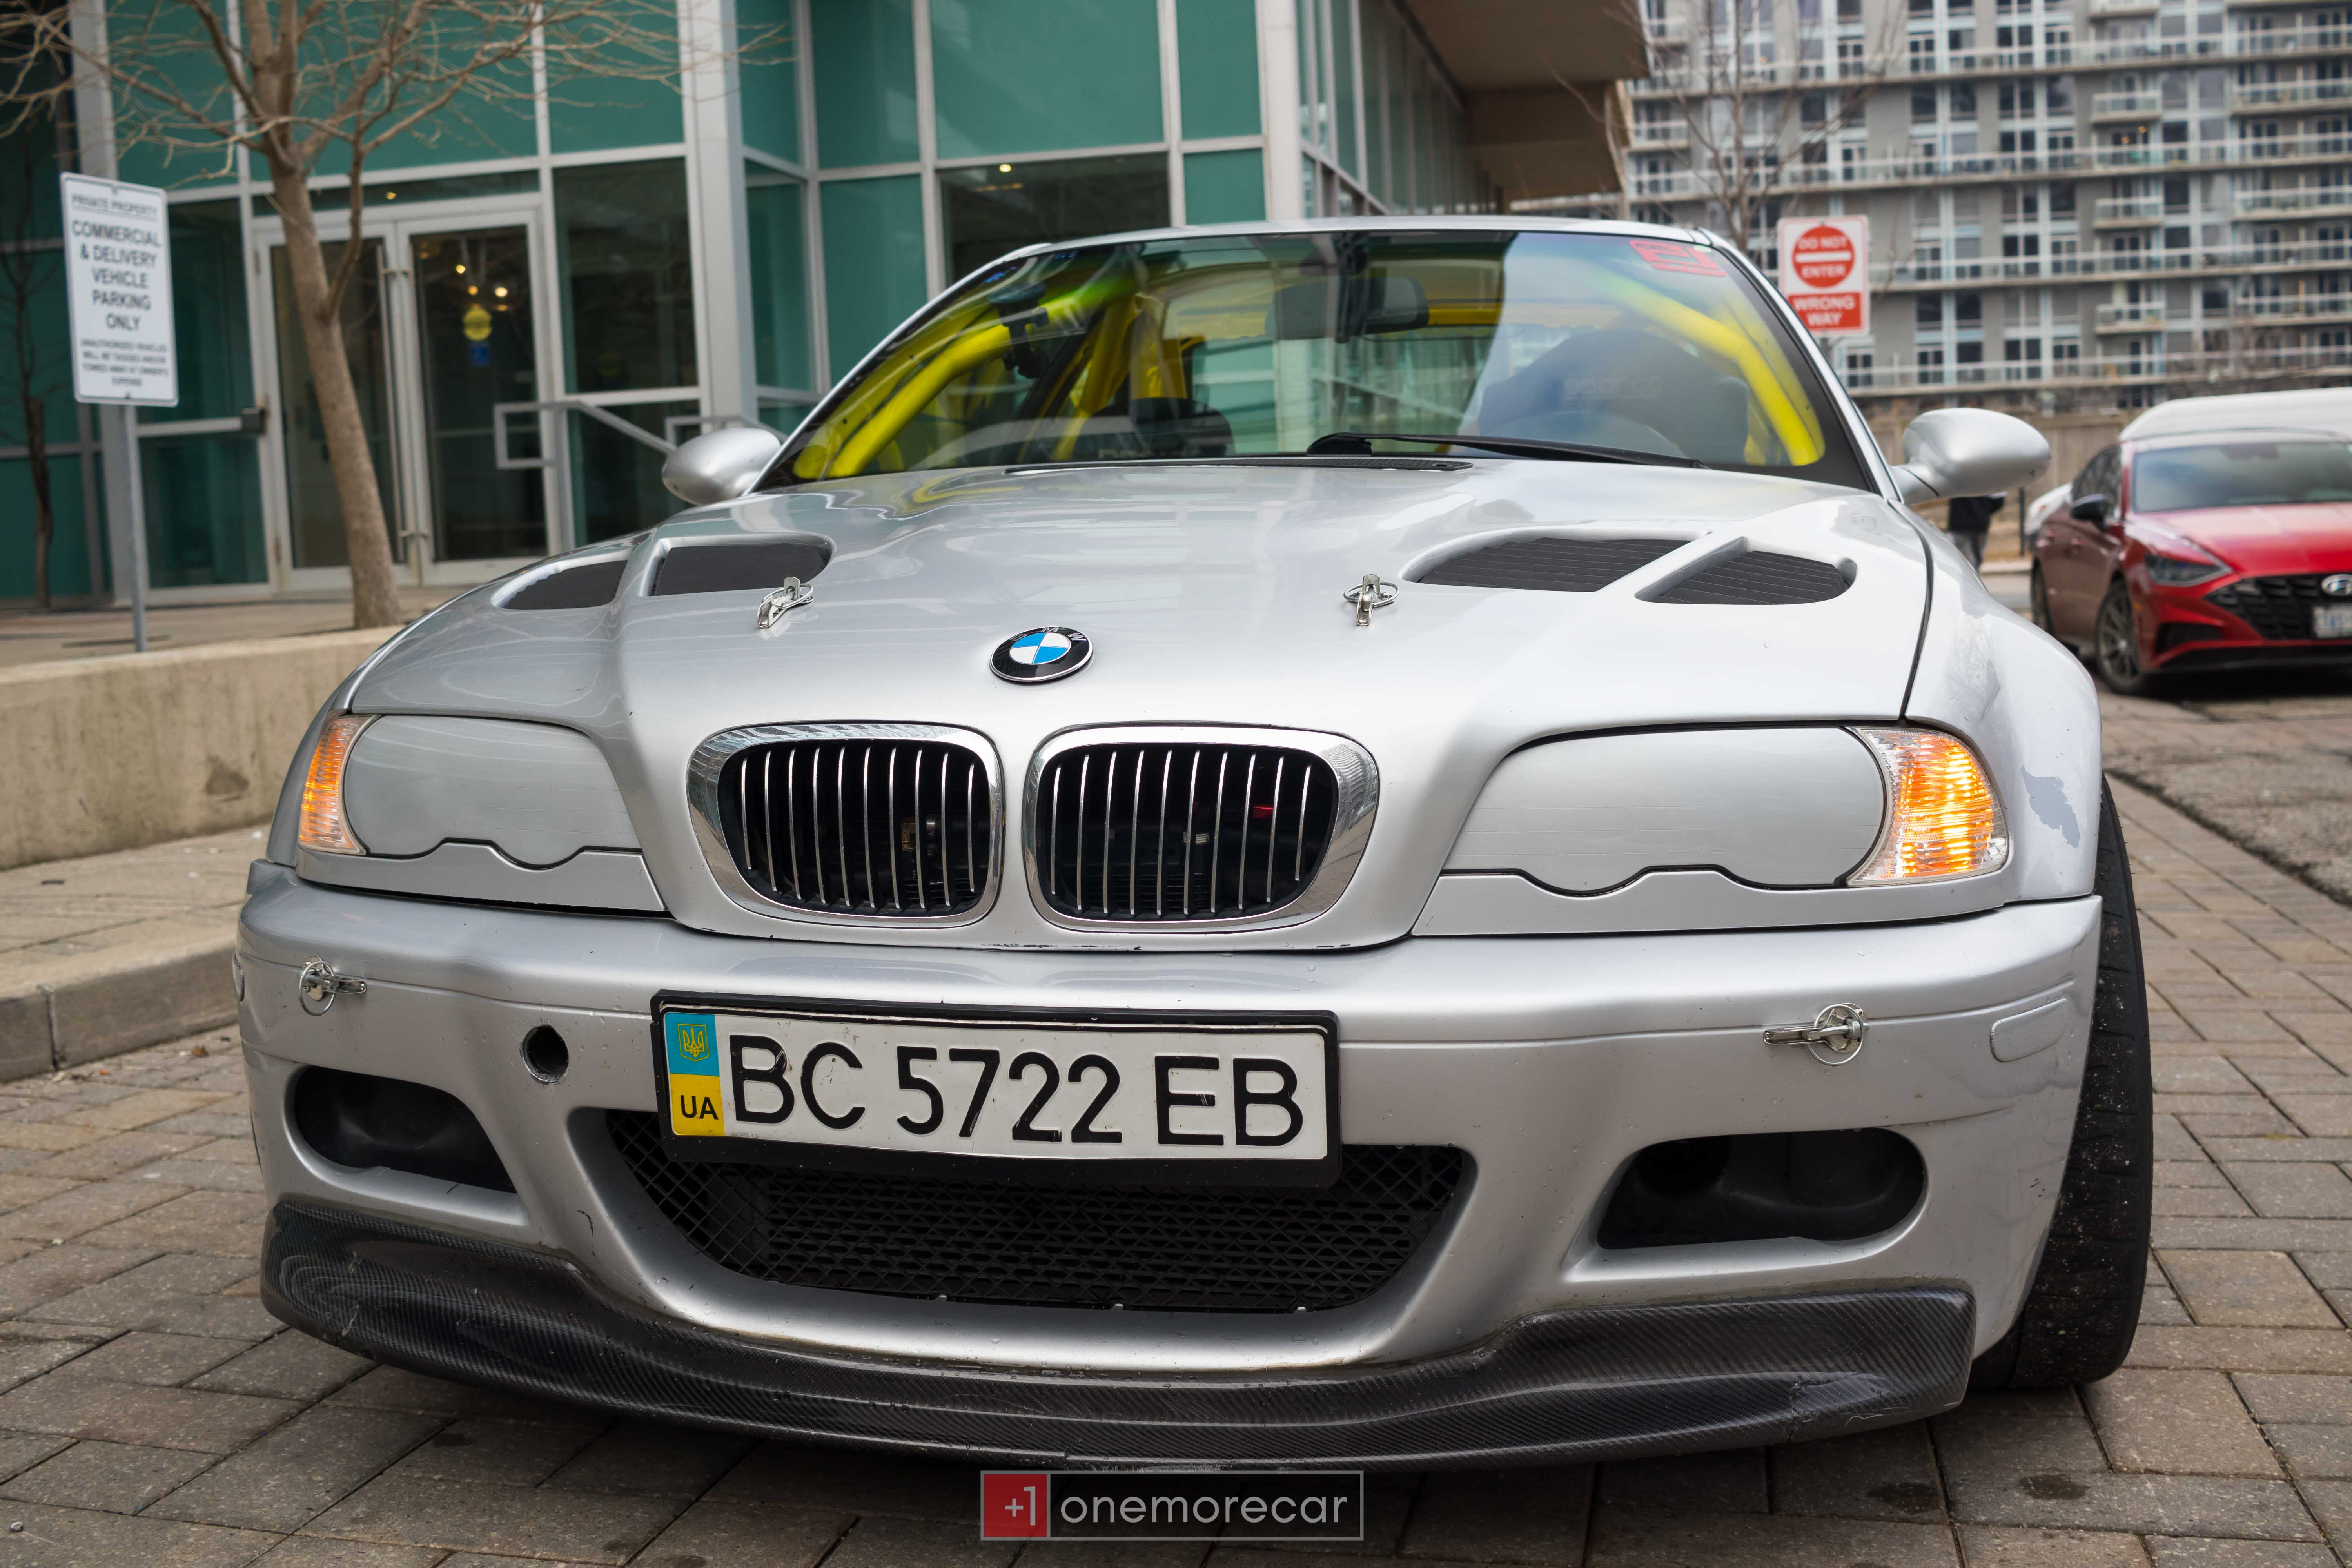 2004 BMW E46 M3 Track Car